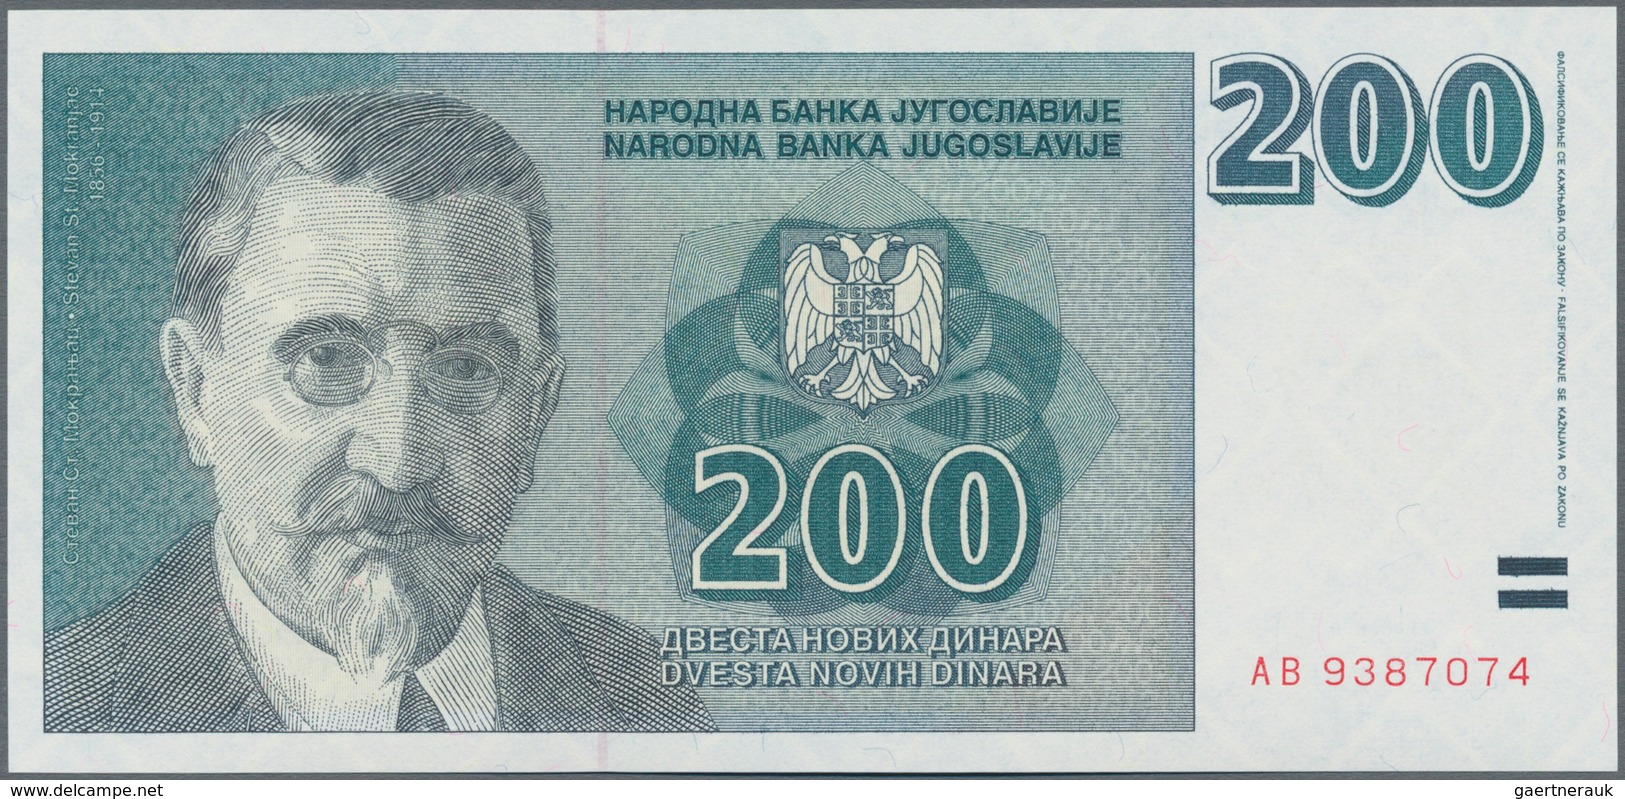 Yugoslavia / Jugoslavien: 200 Novi Dinar 1999 Not Issued, P.152A In UNC Condition. - Yougoslavie